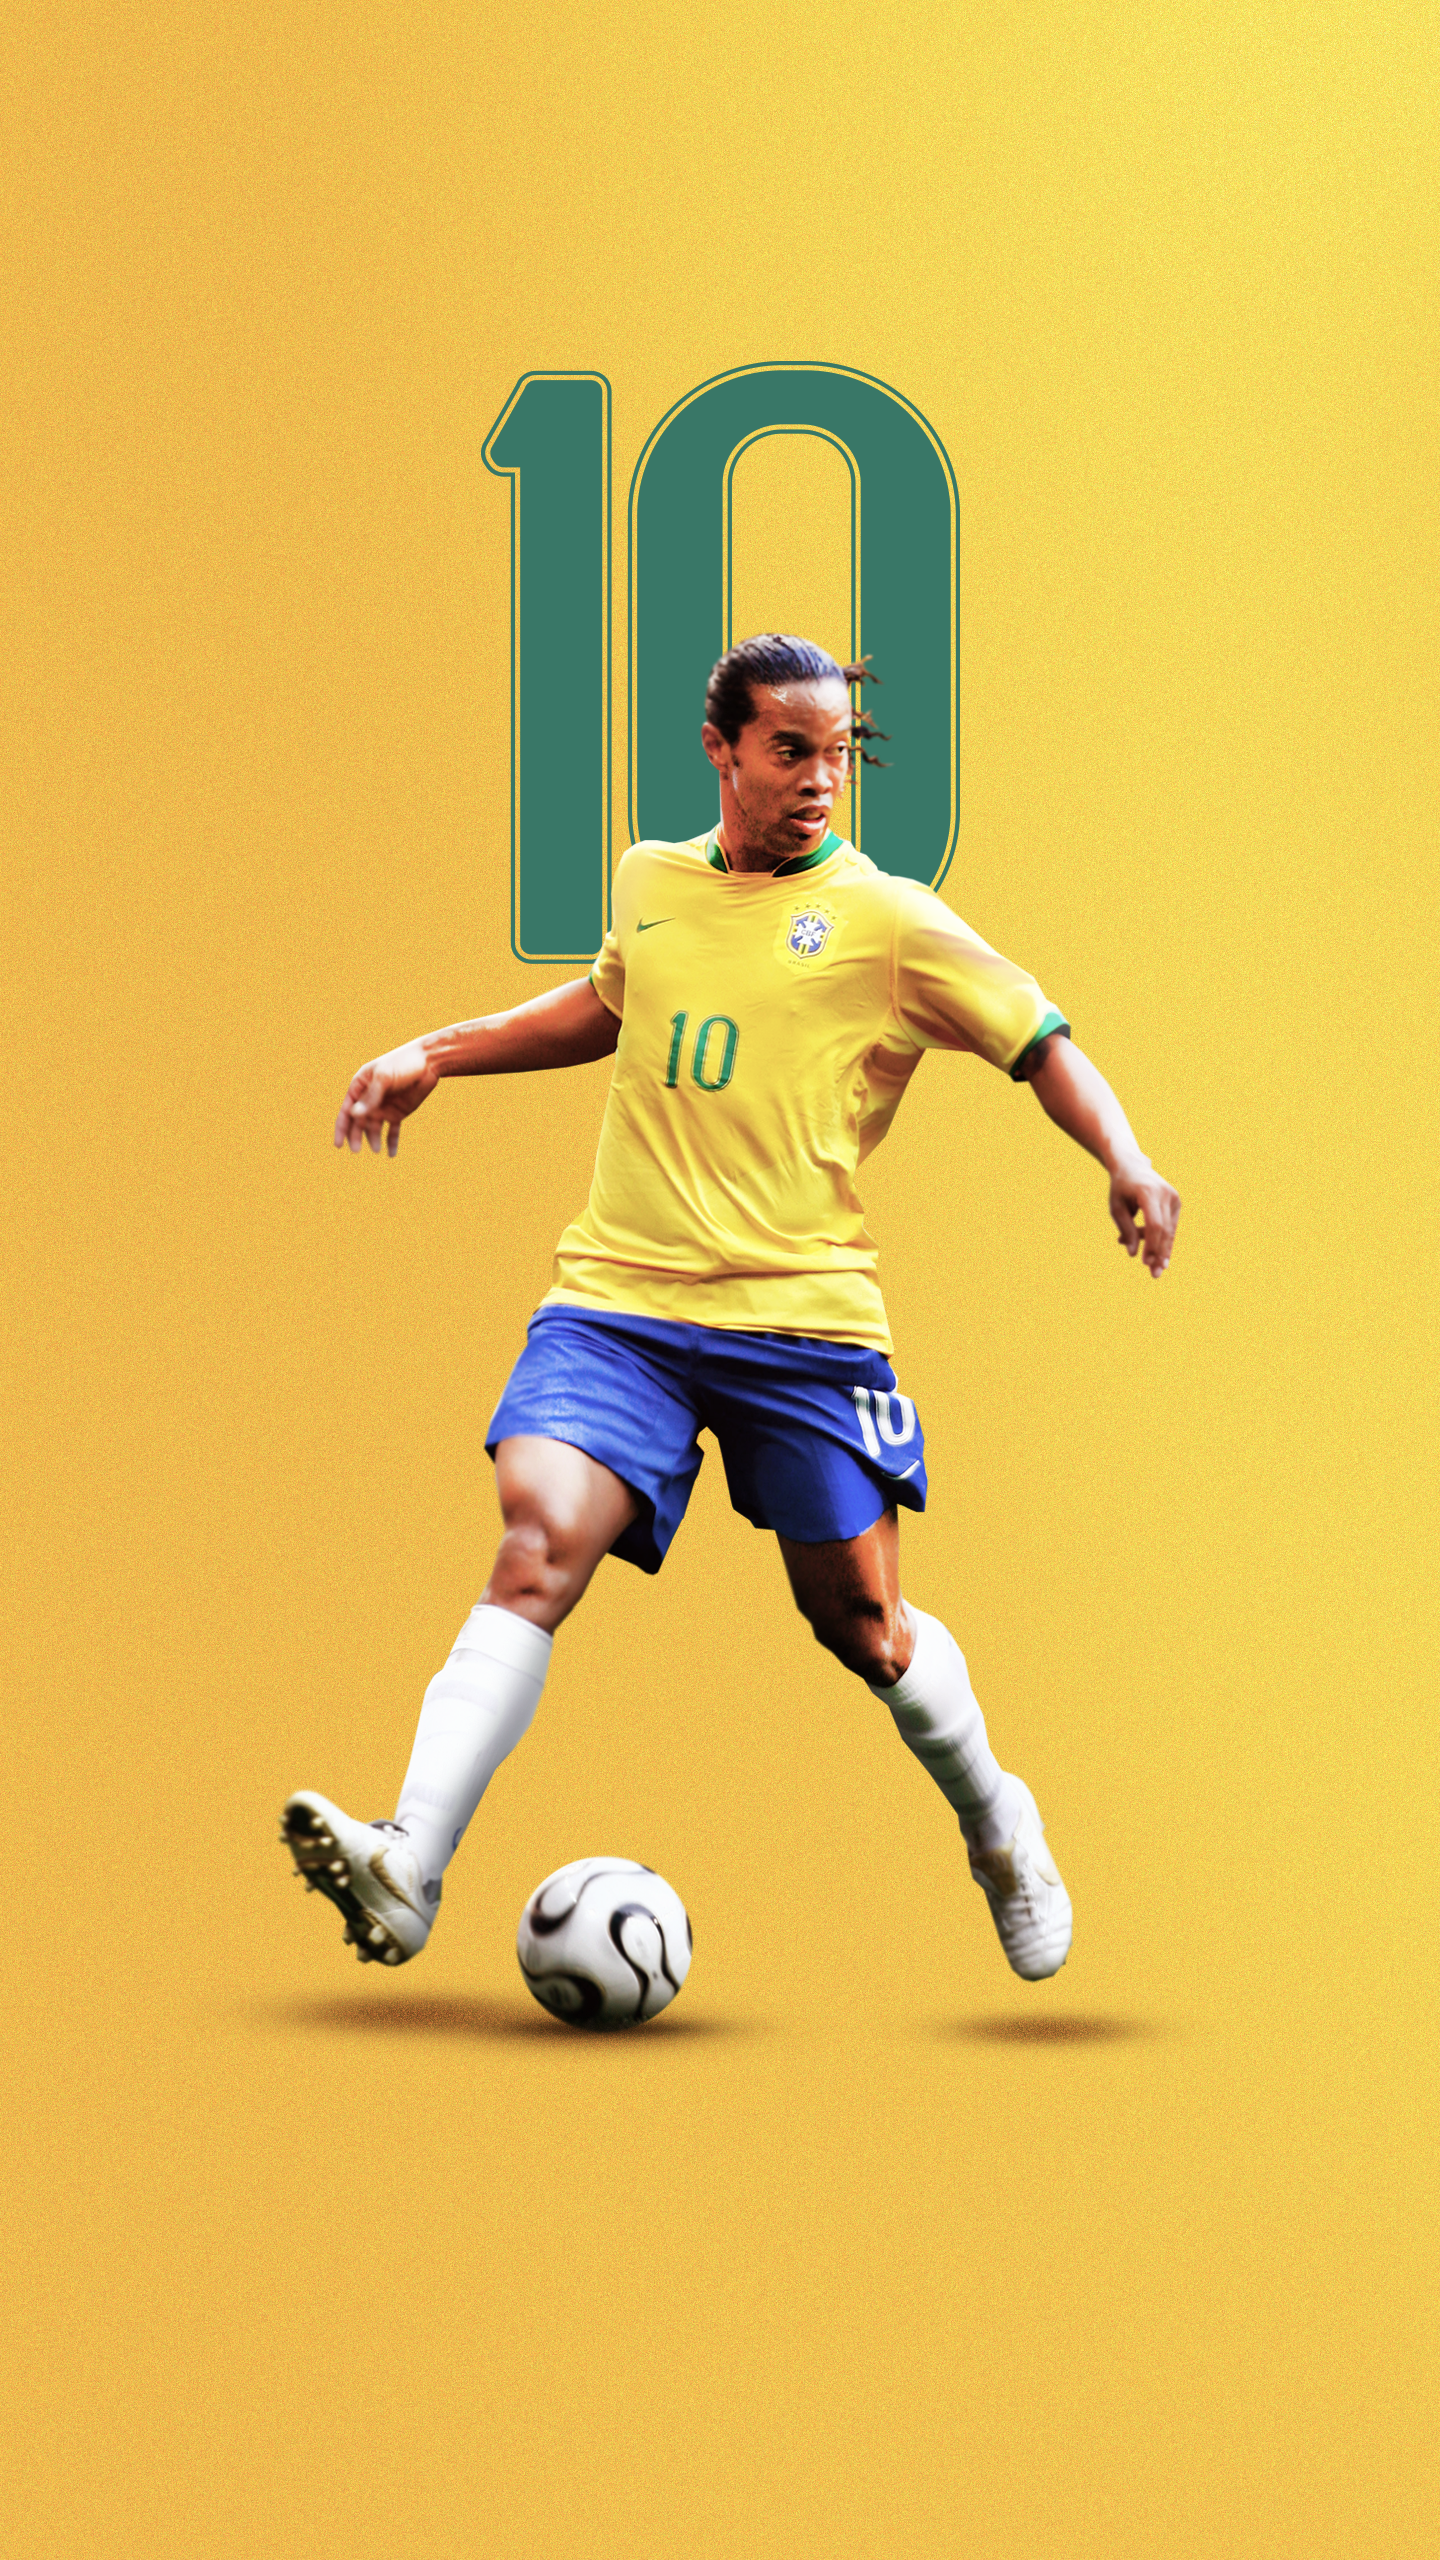 ronaldinho wallpaper hd,football player,player,soccer player,sports,team  sport (#1009411) - WallpaperUse